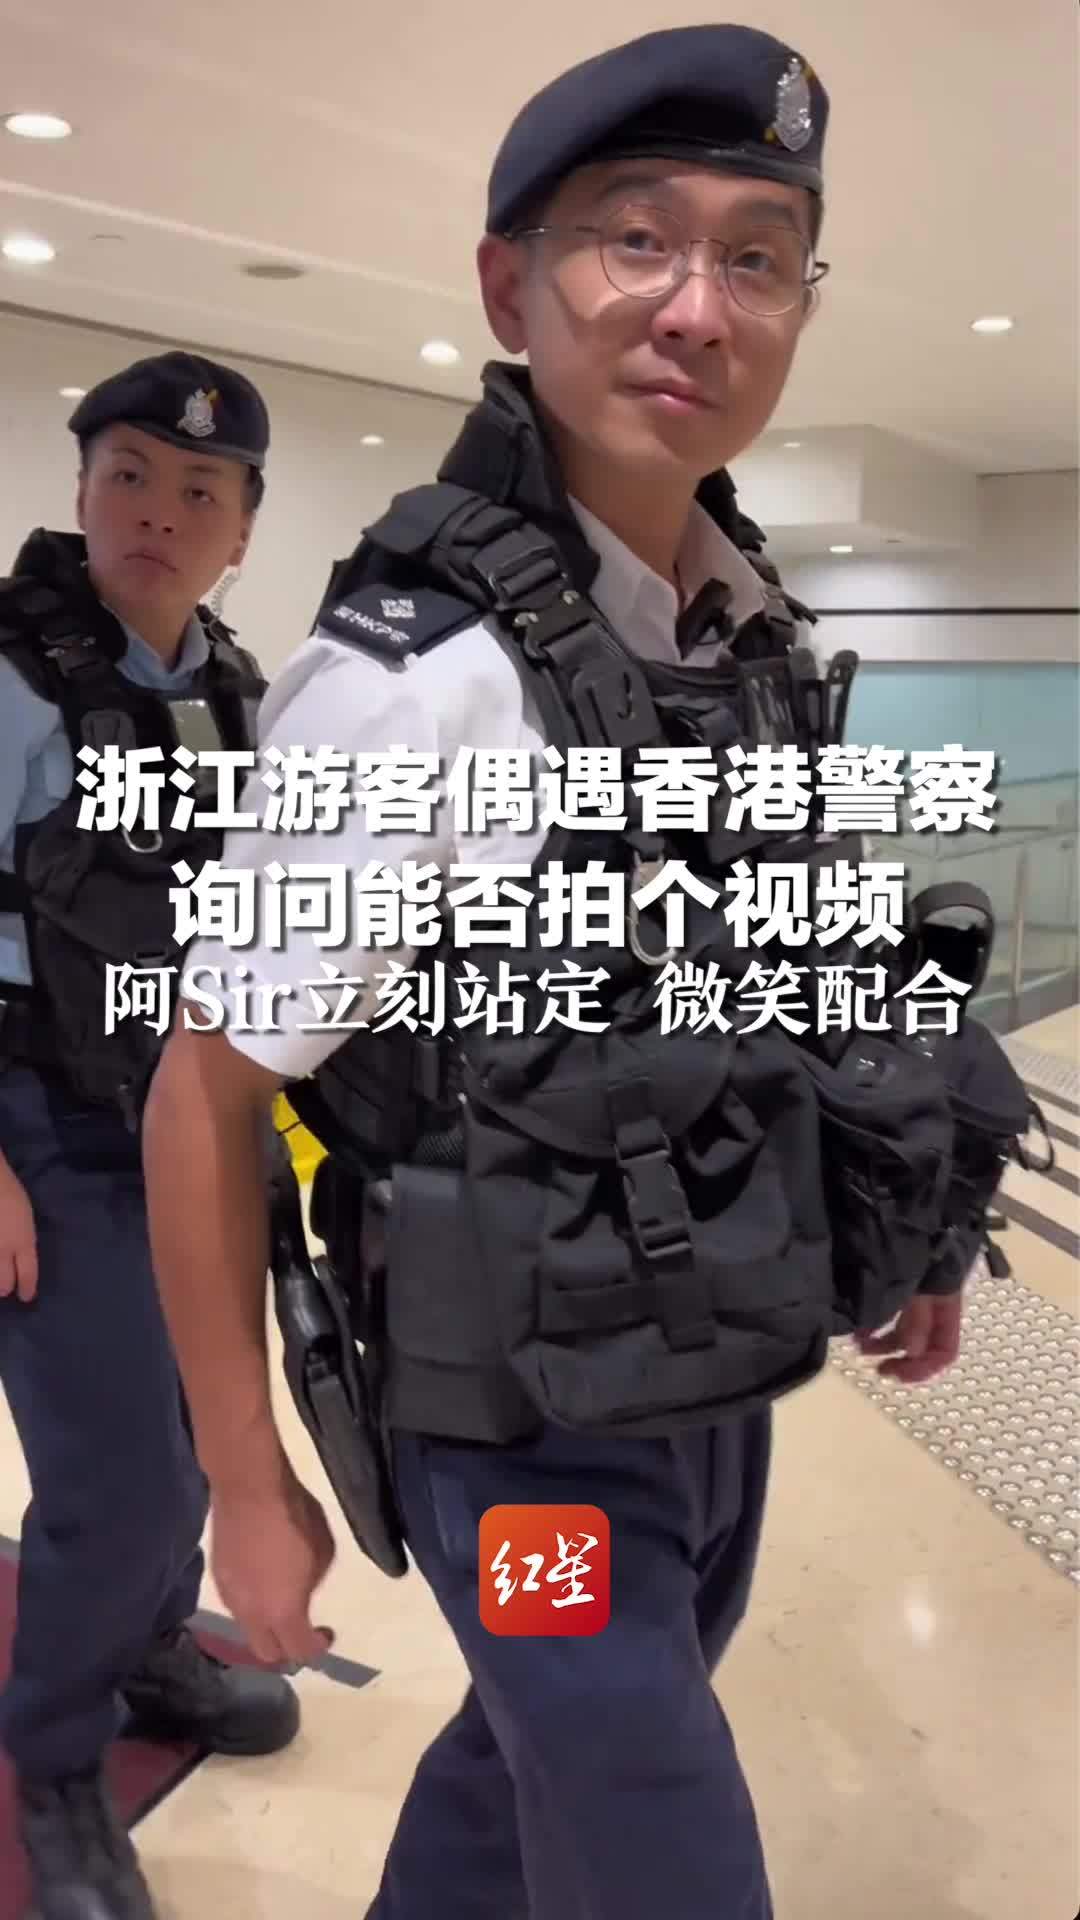 浙江游客偶遇香港警察 询问能否拍个视频，阿Sir立刻站定 微笑配合